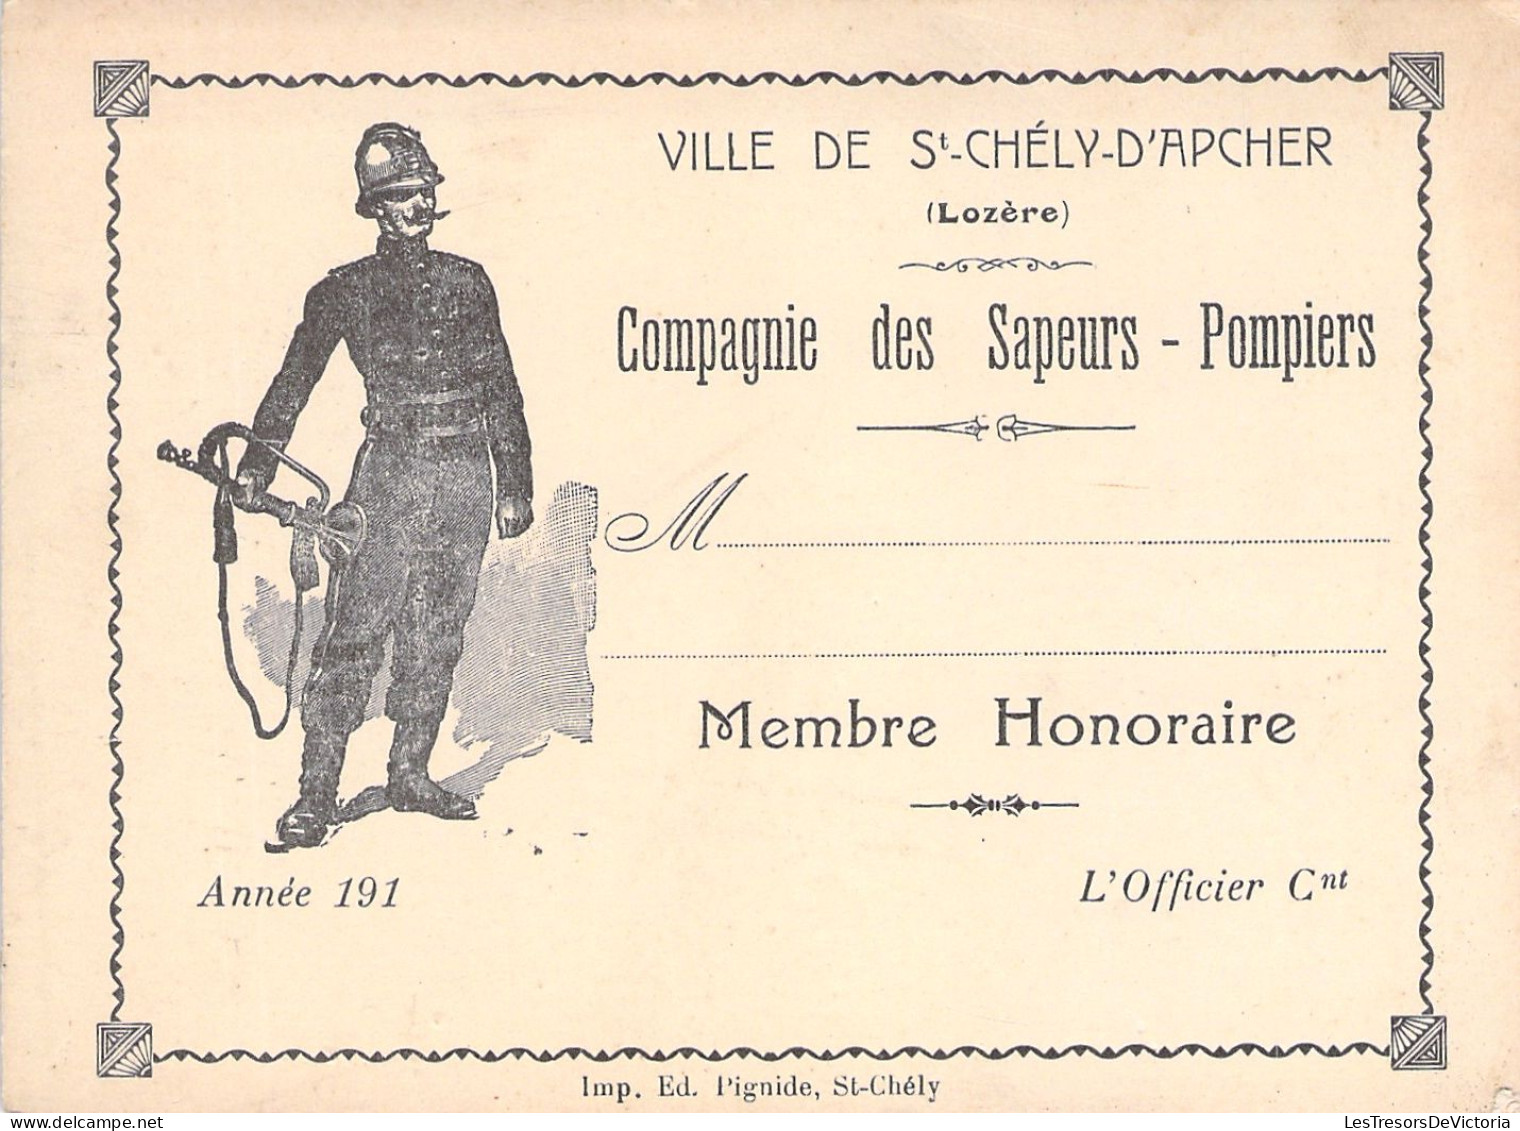 Ville De St Chely D'apcher - Lozere - Compagnie Des Sapeurs Pompiers - Membre Honoraire - Carte De Membre - 12x9cm - Tarjetas De Membresía